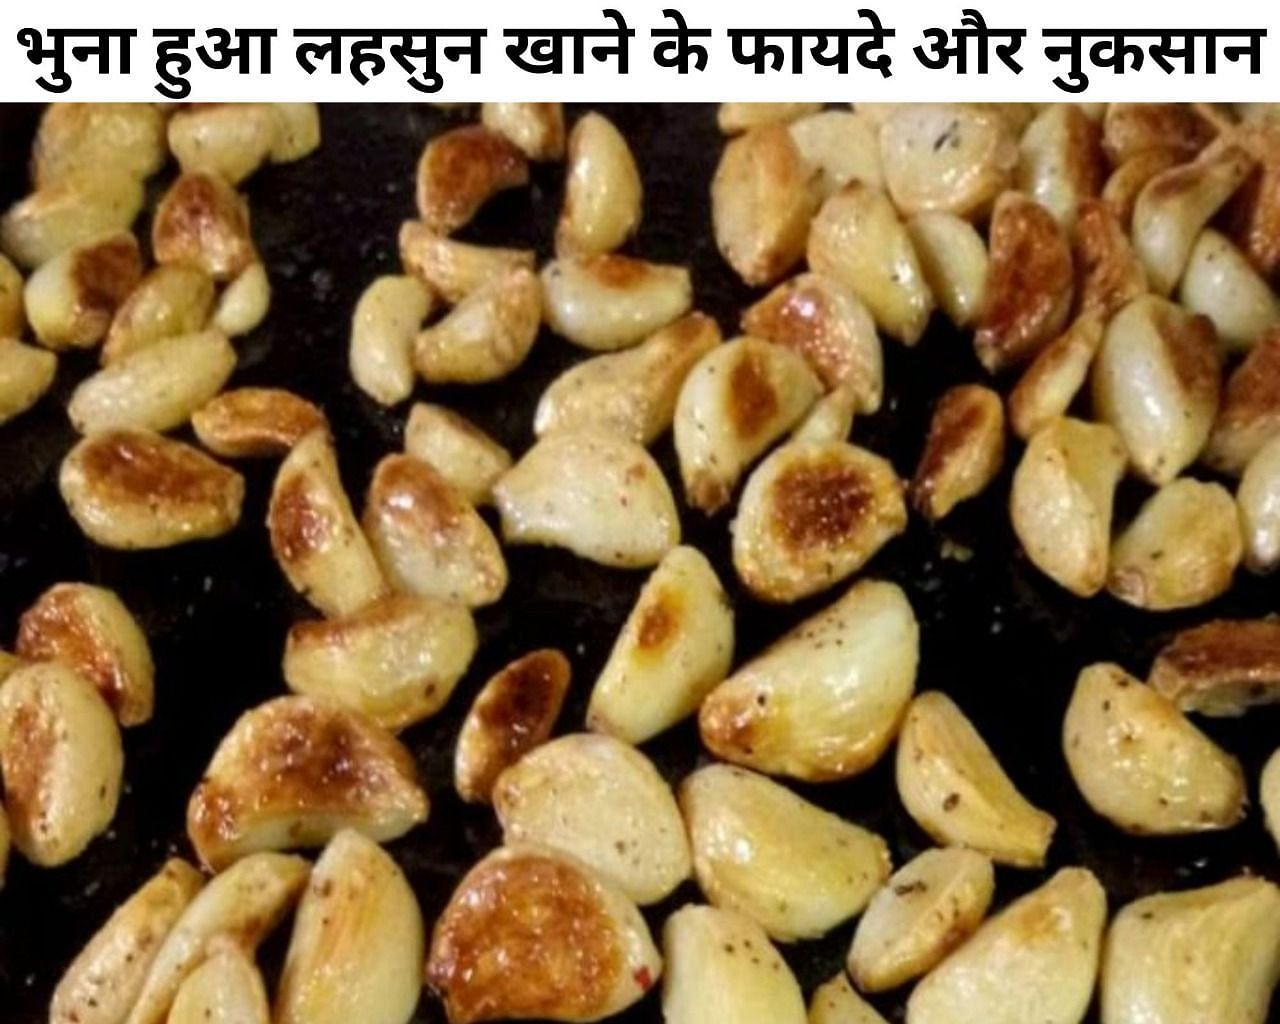 भुना हुआ लहसुन खाने के फायदे और नुकसान (फोटो - sportskeeda hindi)